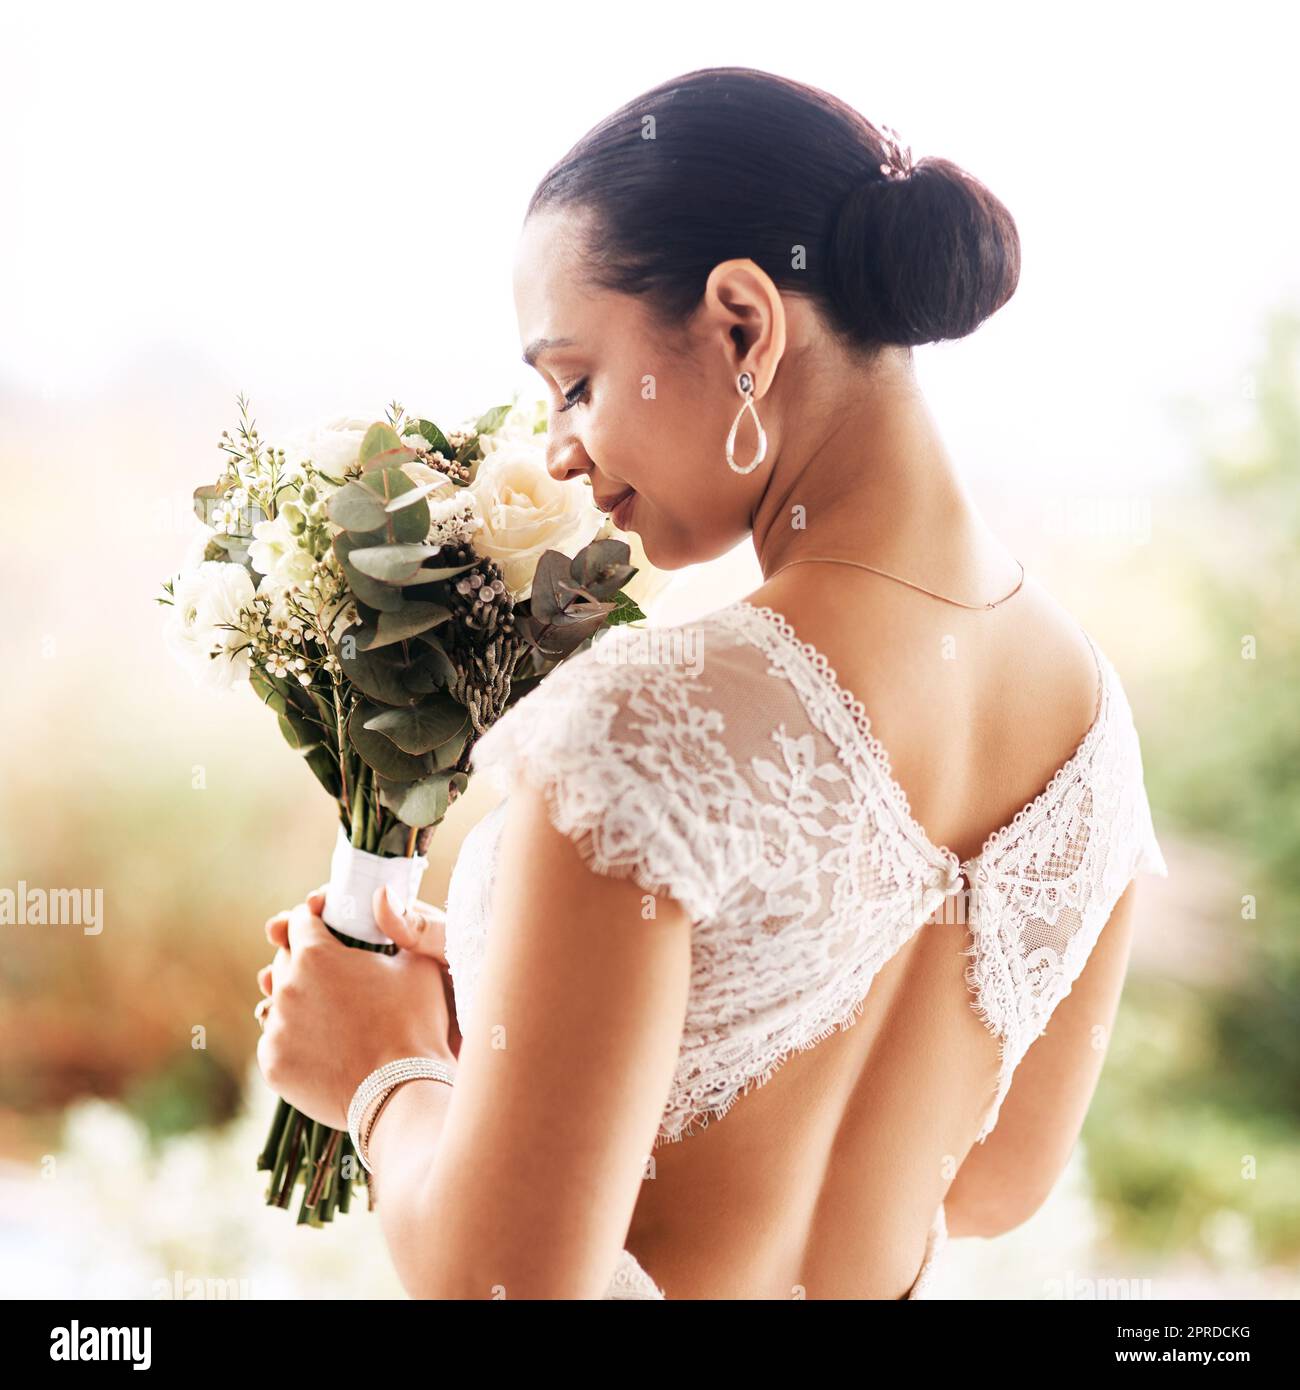 Der Duft der Liebe. Eine schöne junge Braut riecht an ihrem Hochzeitstag im Freien nach ihrem Blumenstrauß. Stockfoto